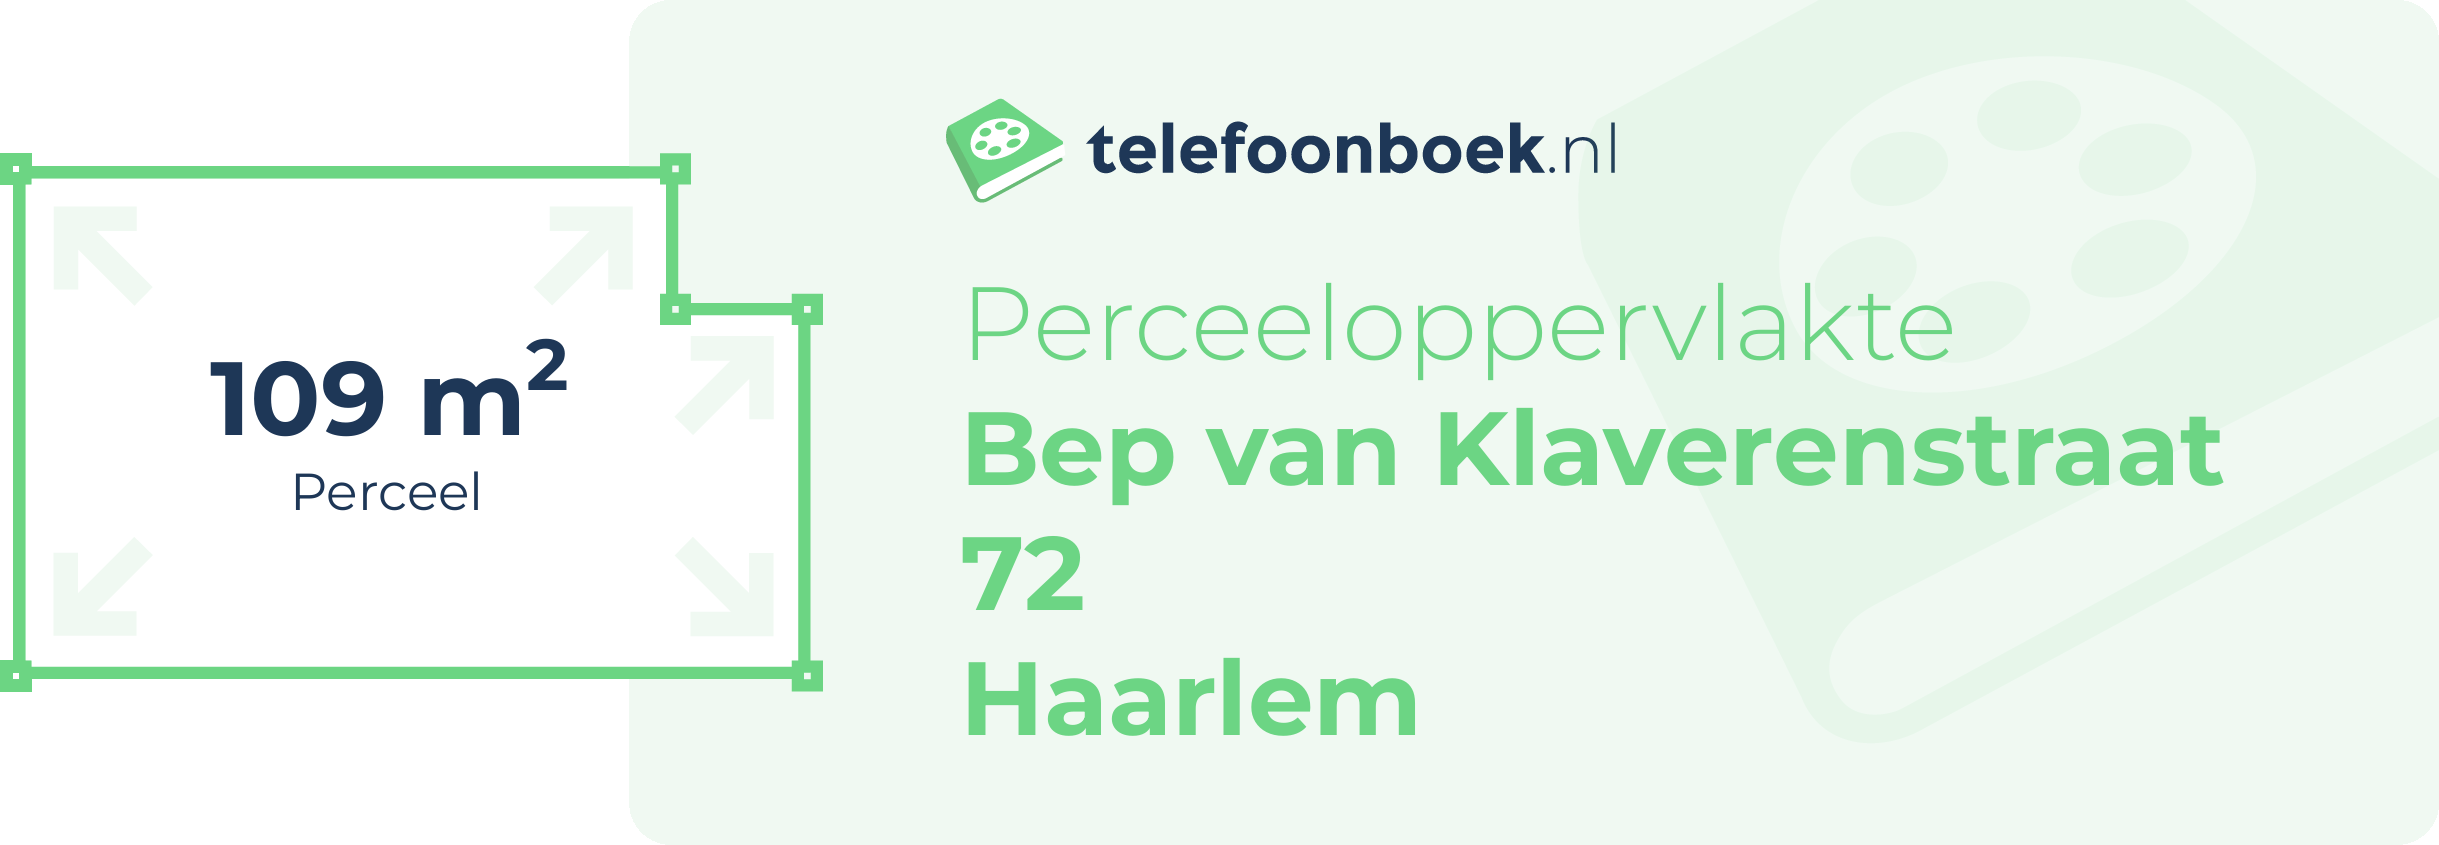 Perceeloppervlakte Bep Van Klaverenstraat 72 Haarlem